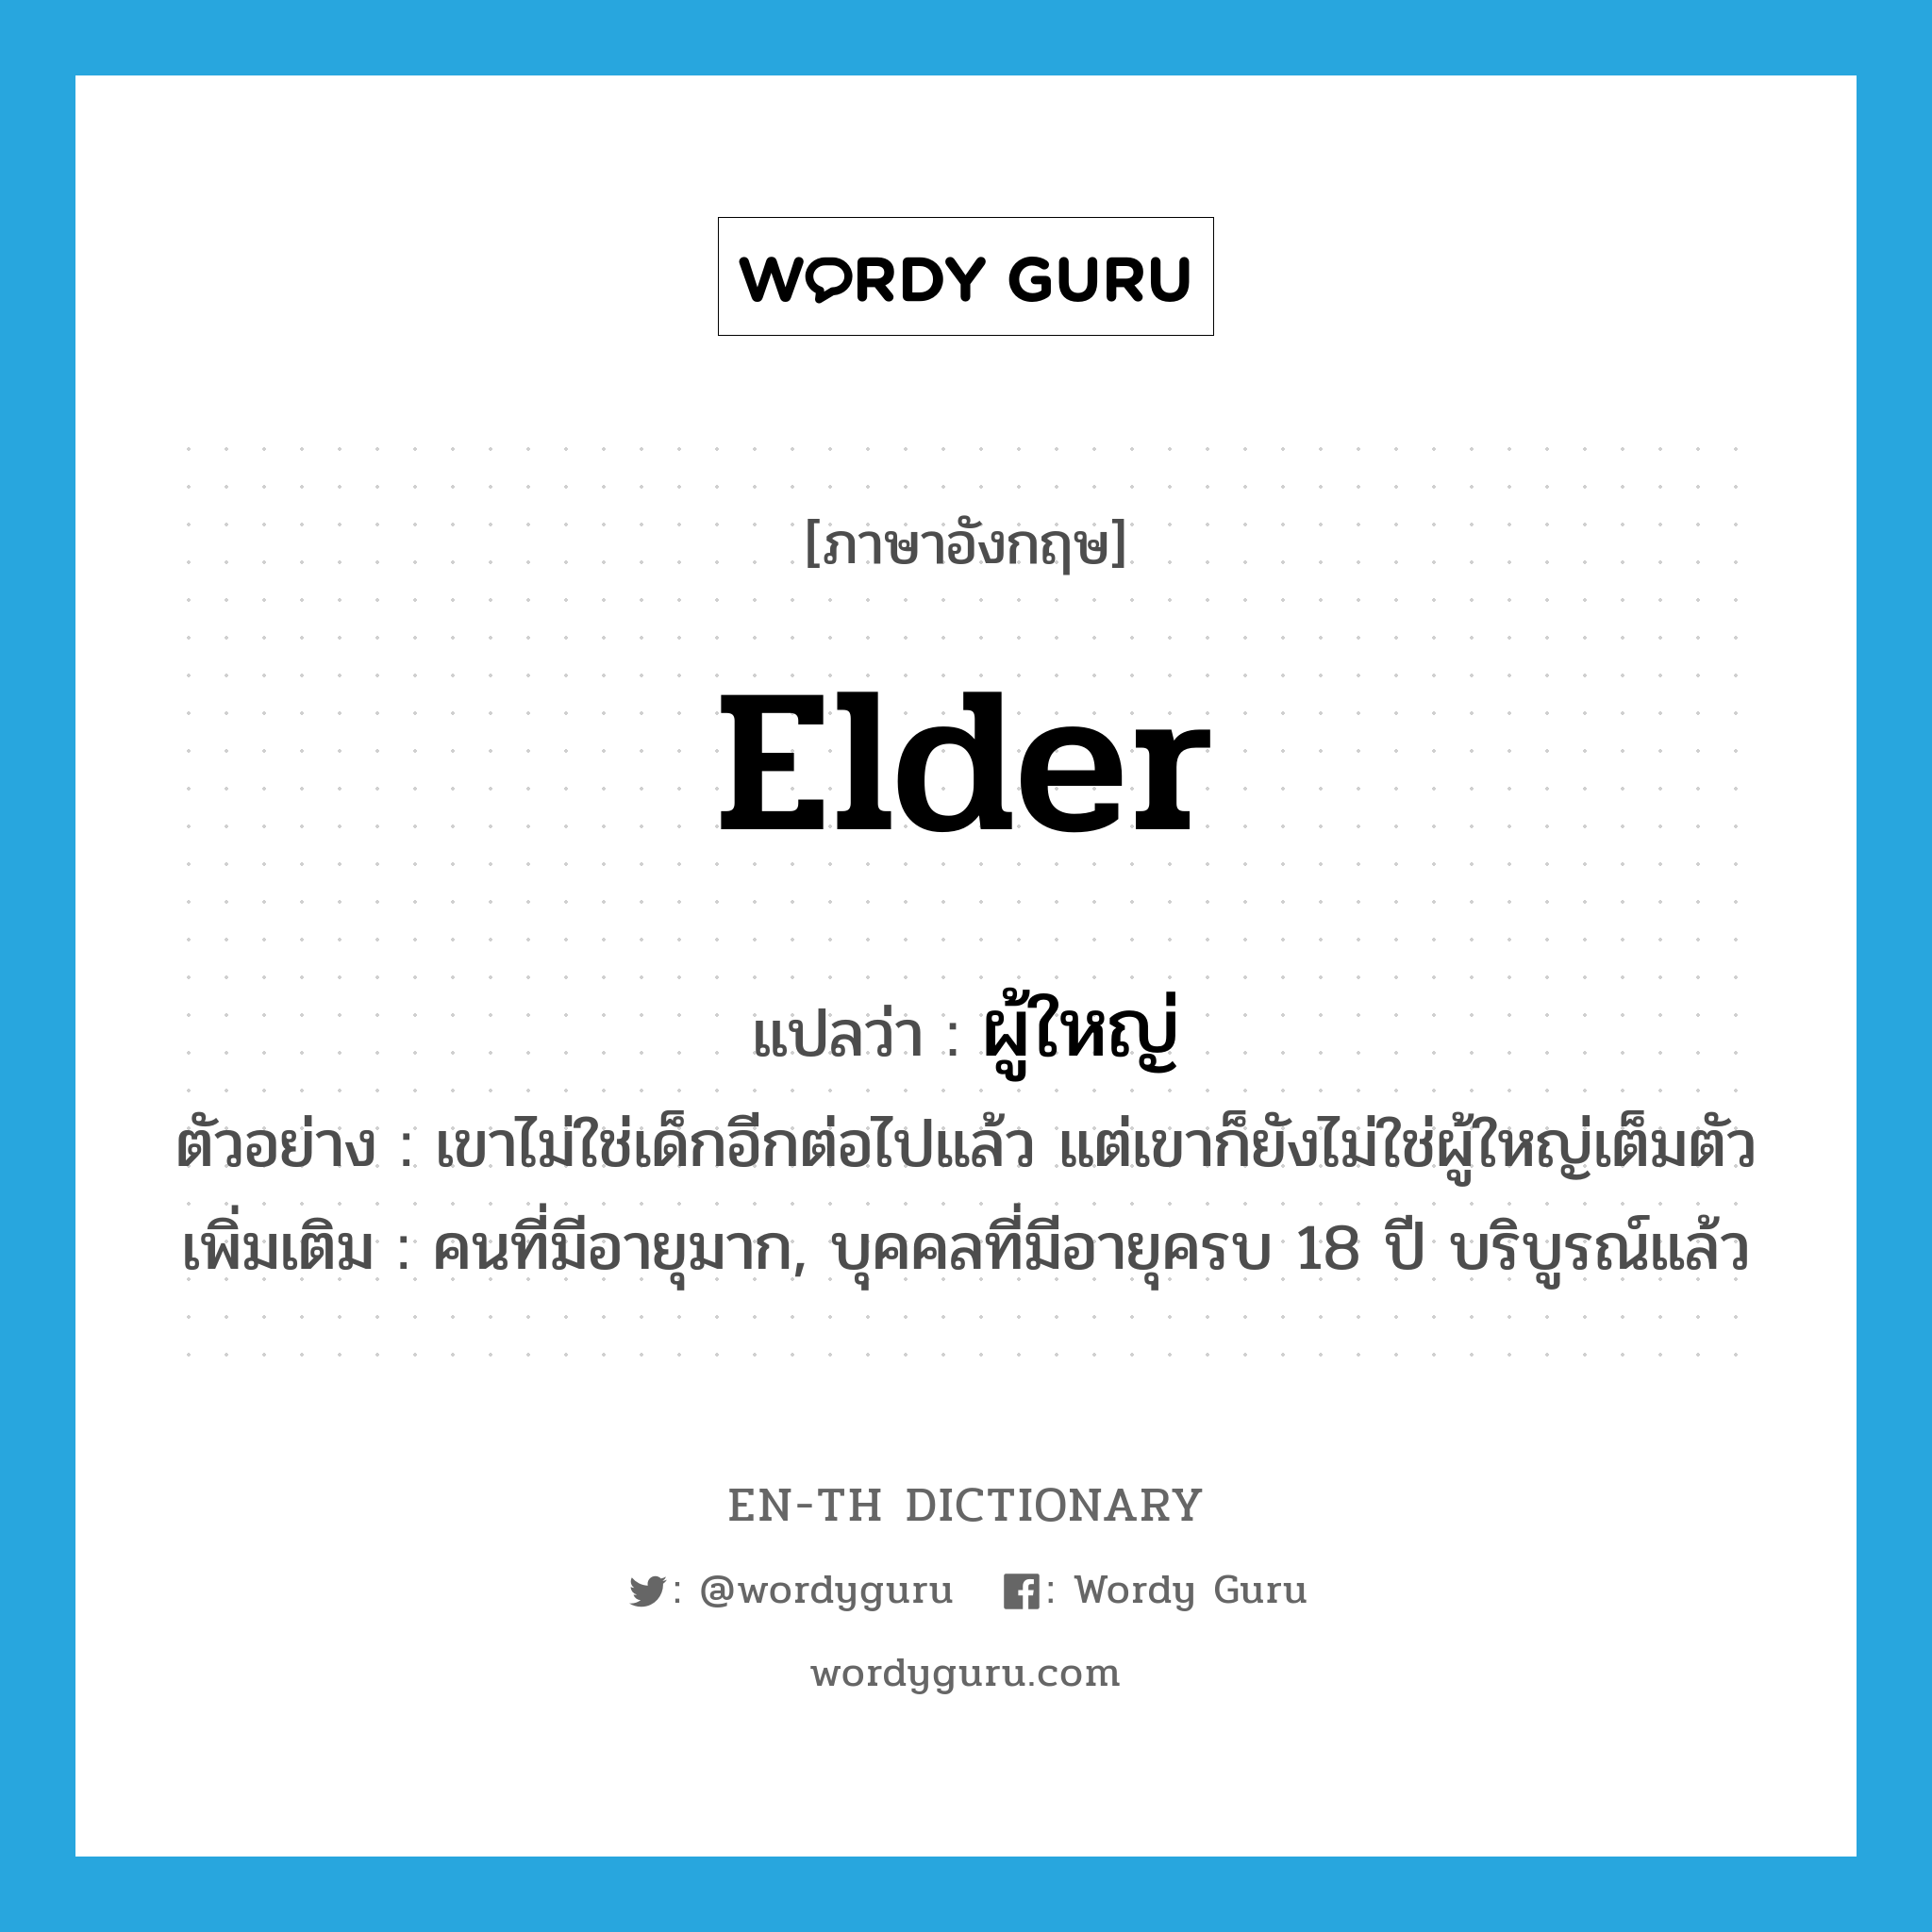 ผู้ใหญ่ ภาษาอังกฤษ?, คำศัพท์ภาษาอังกฤษ ผู้ใหญ่ แปลว่า elder ประเภท N ตัวอย่าง เขาไม่ใช่เด็กอีกต่อไปแล้ว แต่เขาก็ยังไม่ใช่ผู้ใหญ่เต็มตัว เพิ่มเติม คนที่มีอายุมาก, บุคคลที่มีอายุครบ 18 ปี บริบูรณ์แล้ว หมวด N